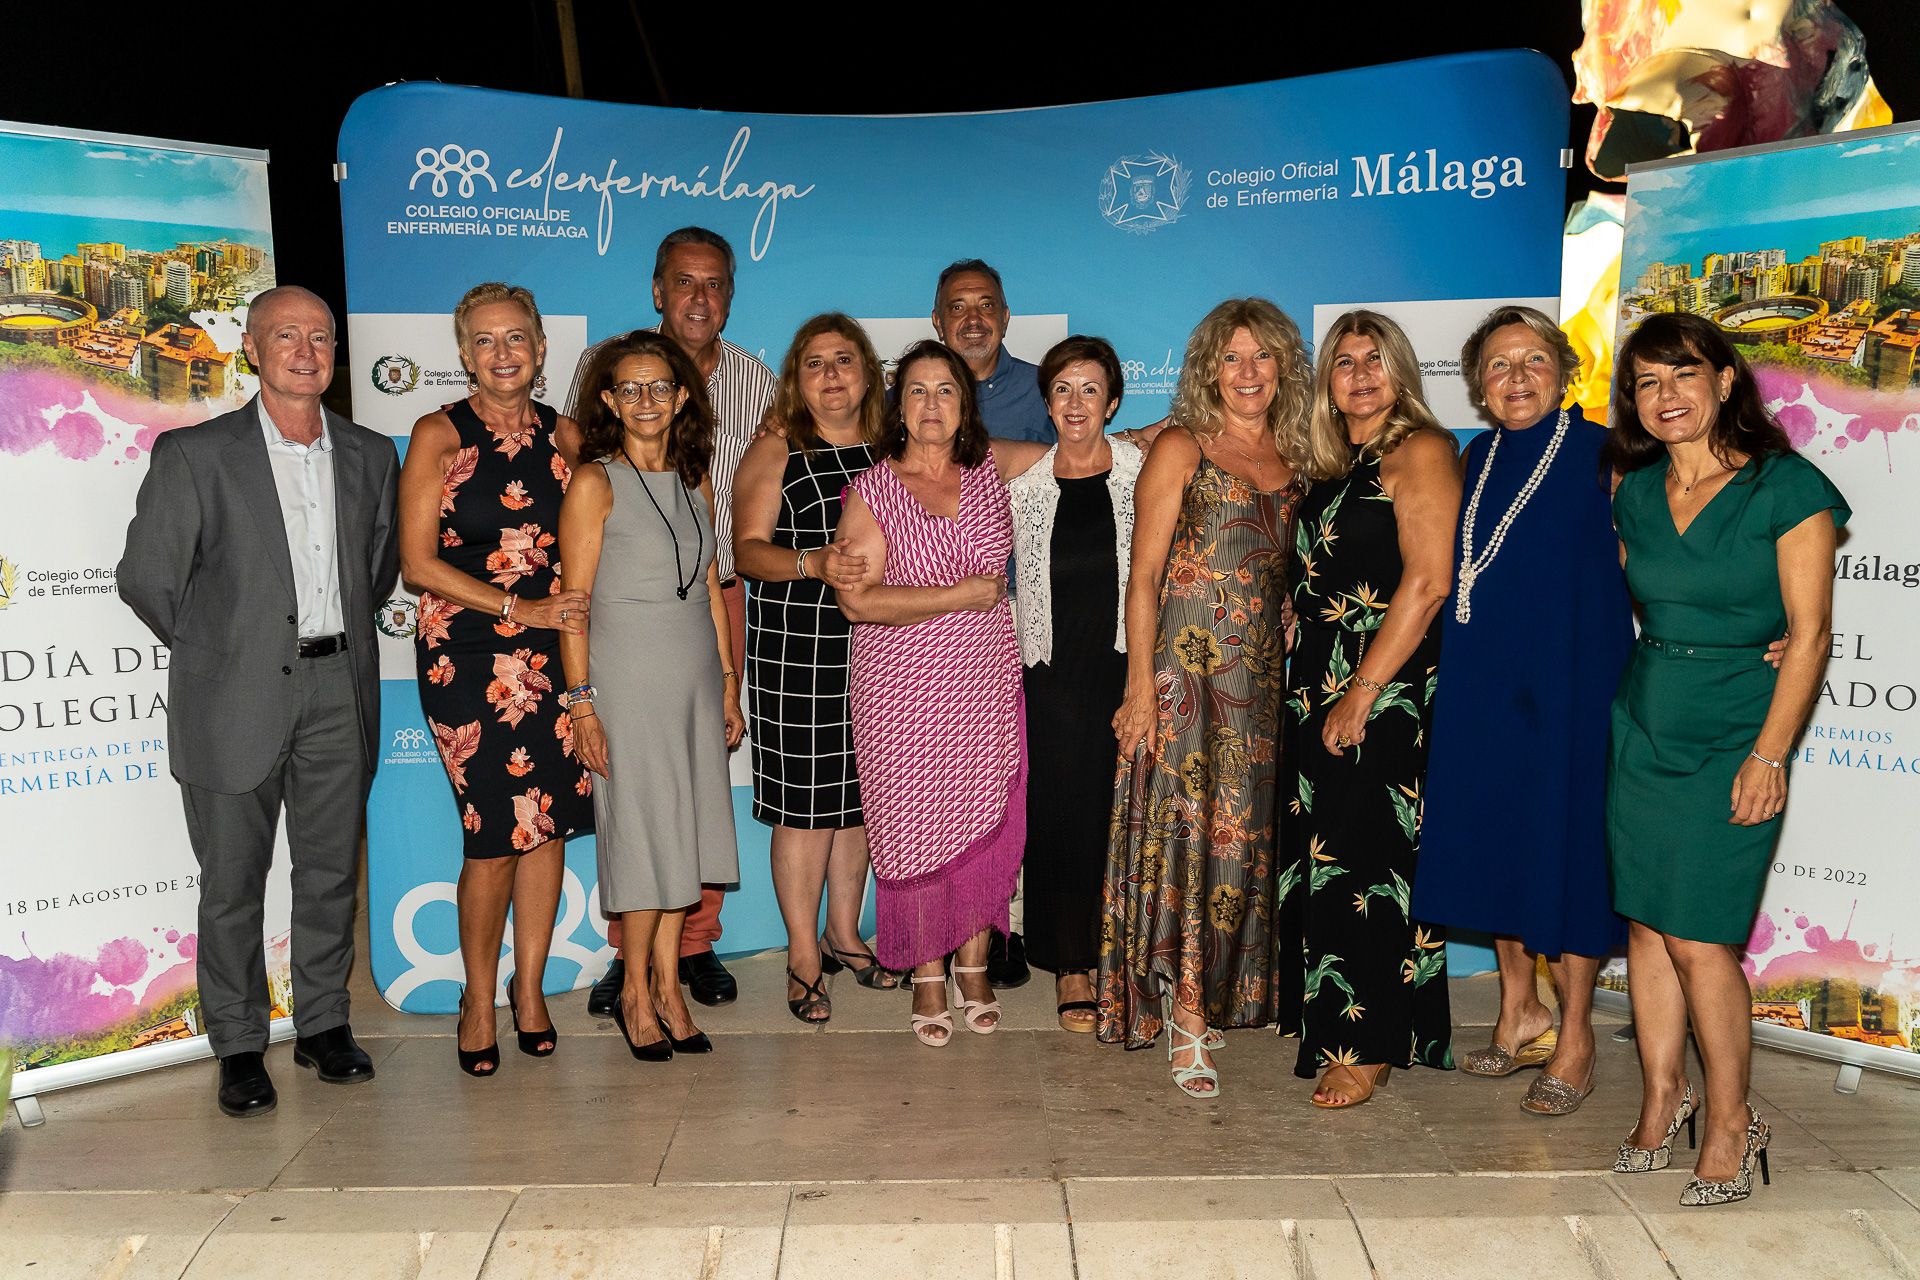 Día del Colegiado del Colegio de Enfermería de Málaga de 2022